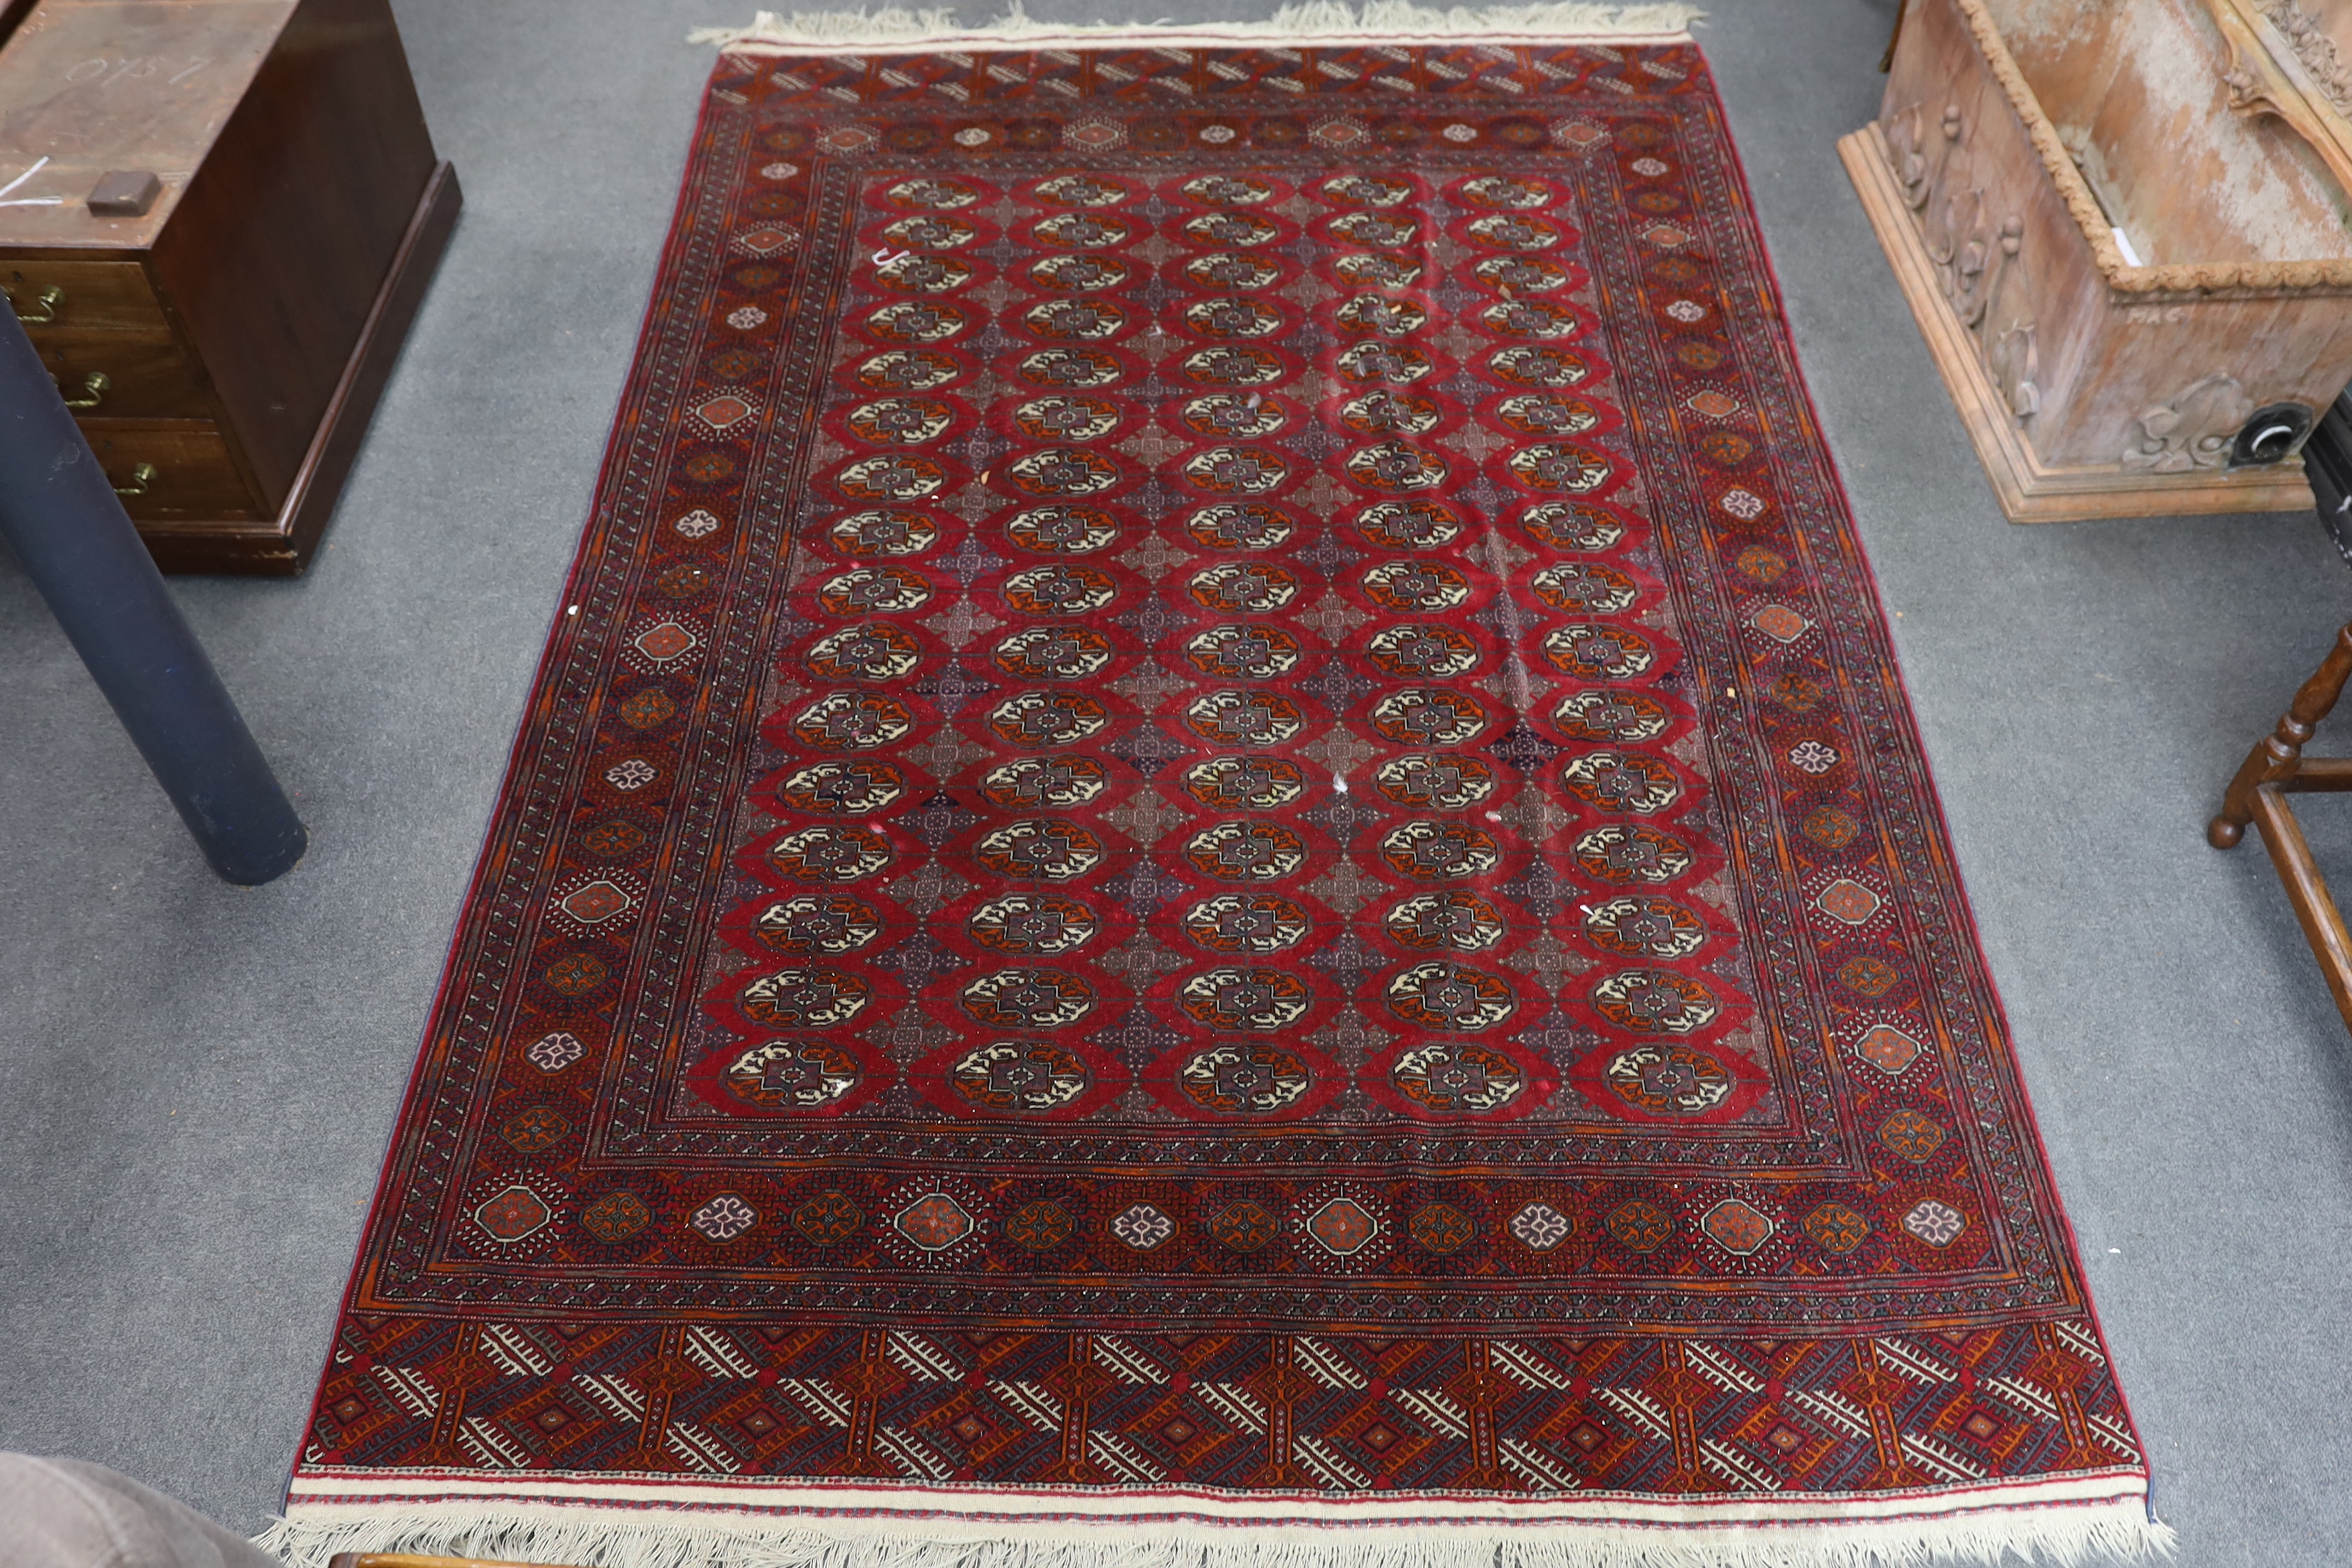 A Bokhara carpet, 290 x 202cm